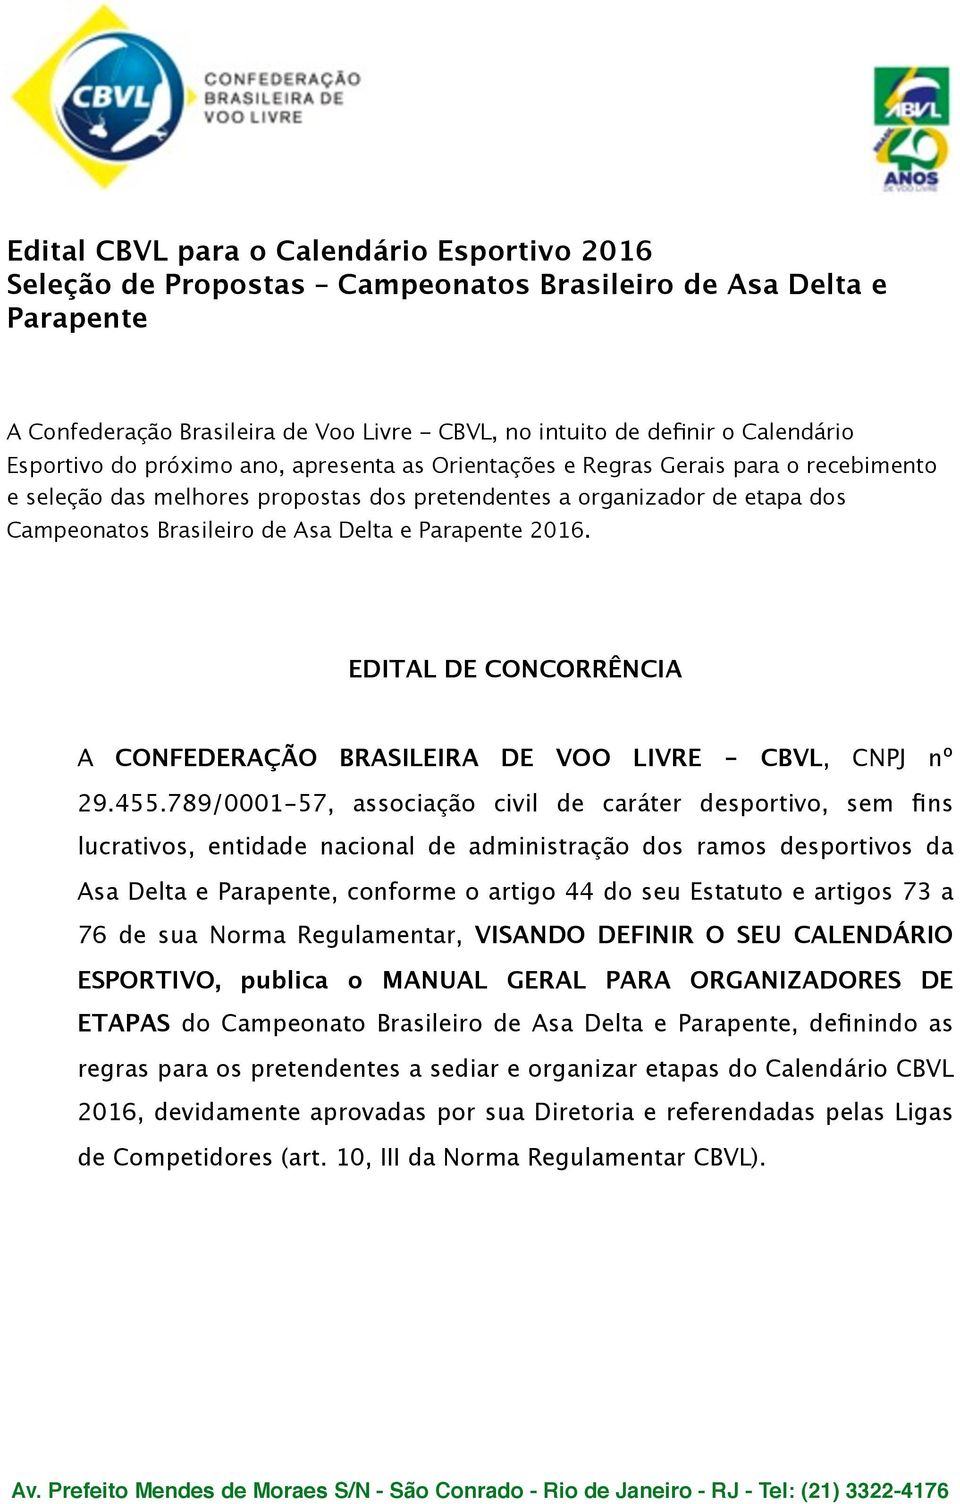 e Parapente 2016. EDITAL DE CONCORRÊNCIA A CONFEDERAÇÃO BRASILEIRA DE VOO LIVRE - CBVL, CNPJ nº 29.455.